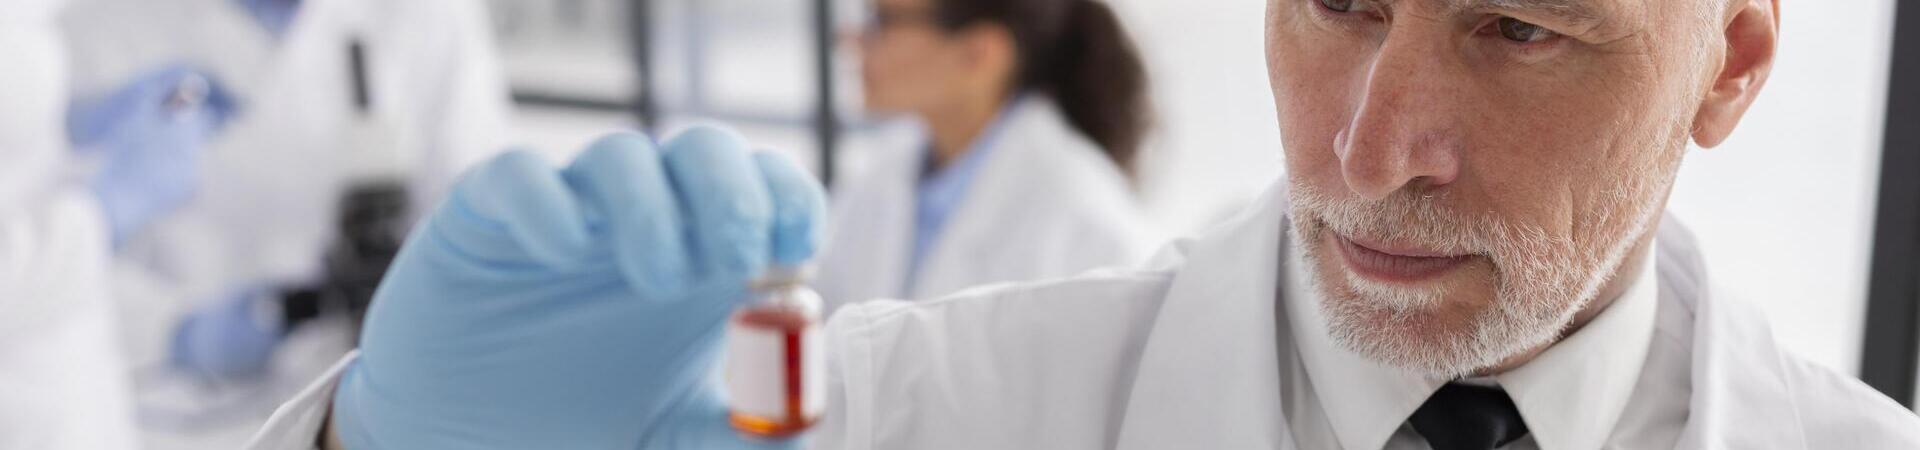 Escolher o melhor laboratório de qualidade para realizar exames é crucial para garantir resultados precisos.